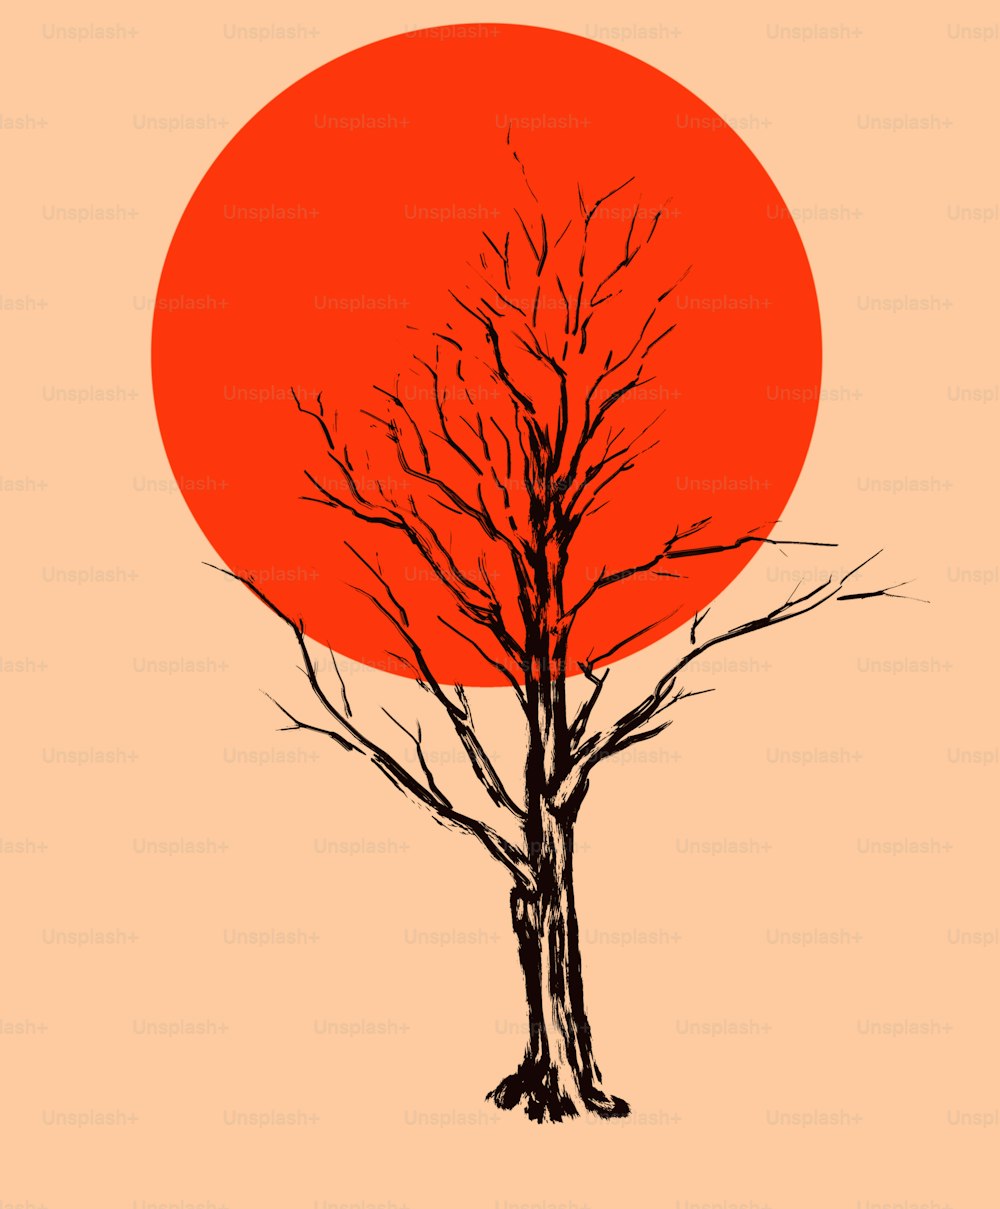 빨갛게 달궈진 태양 원반을 배경으로 한 마른 나무. 세로 형식